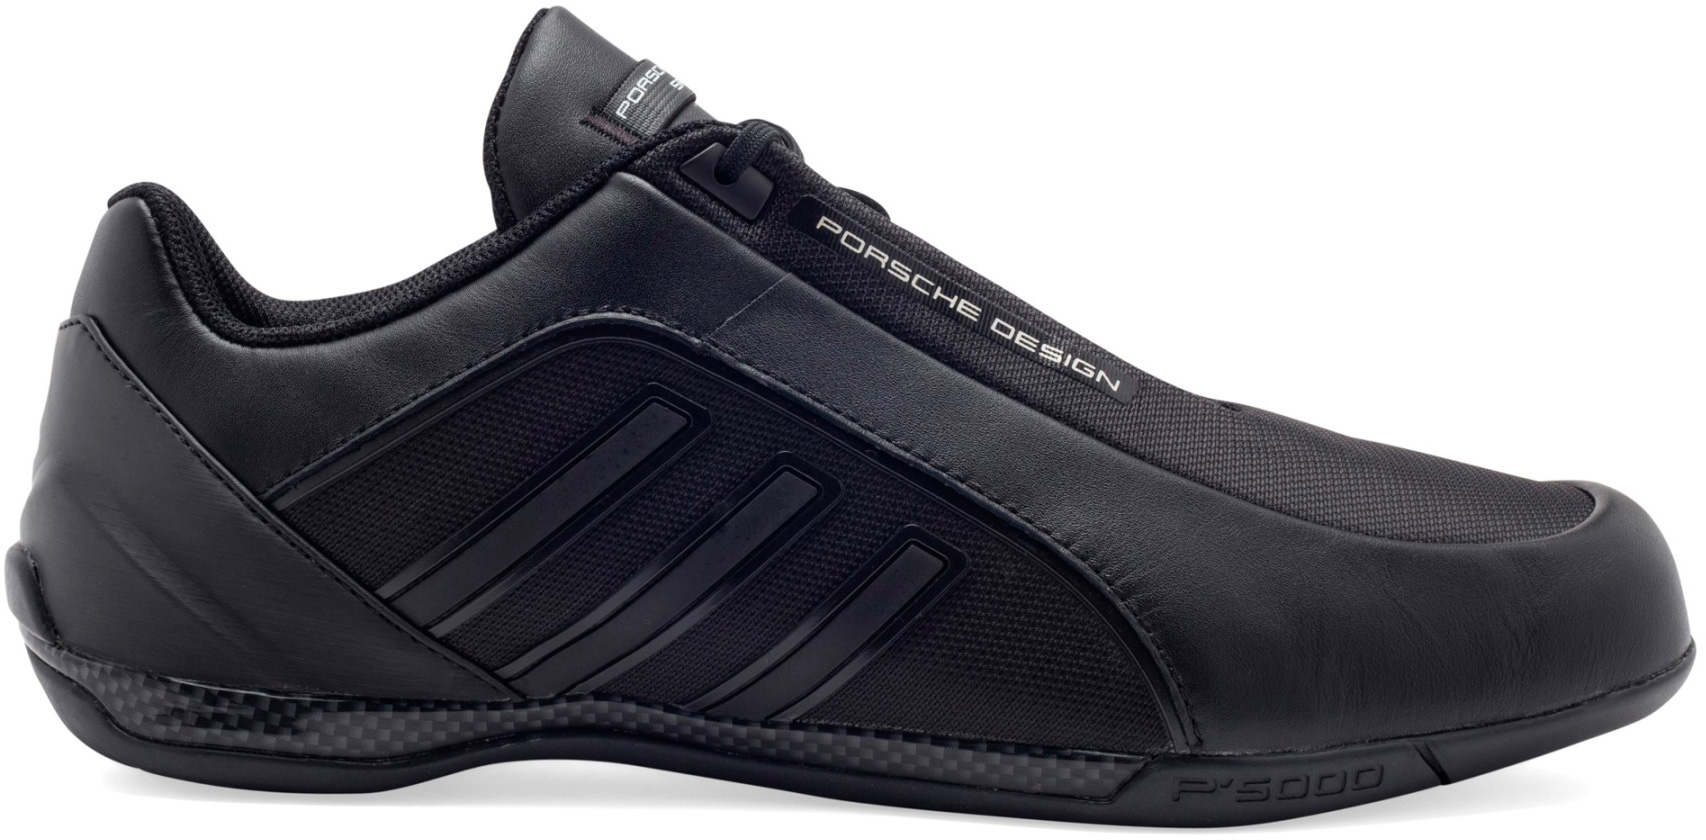 Купить кроссовки Adidas Porsche Design TYP 64 v2 leather Black с доставкой по Москве и РФ